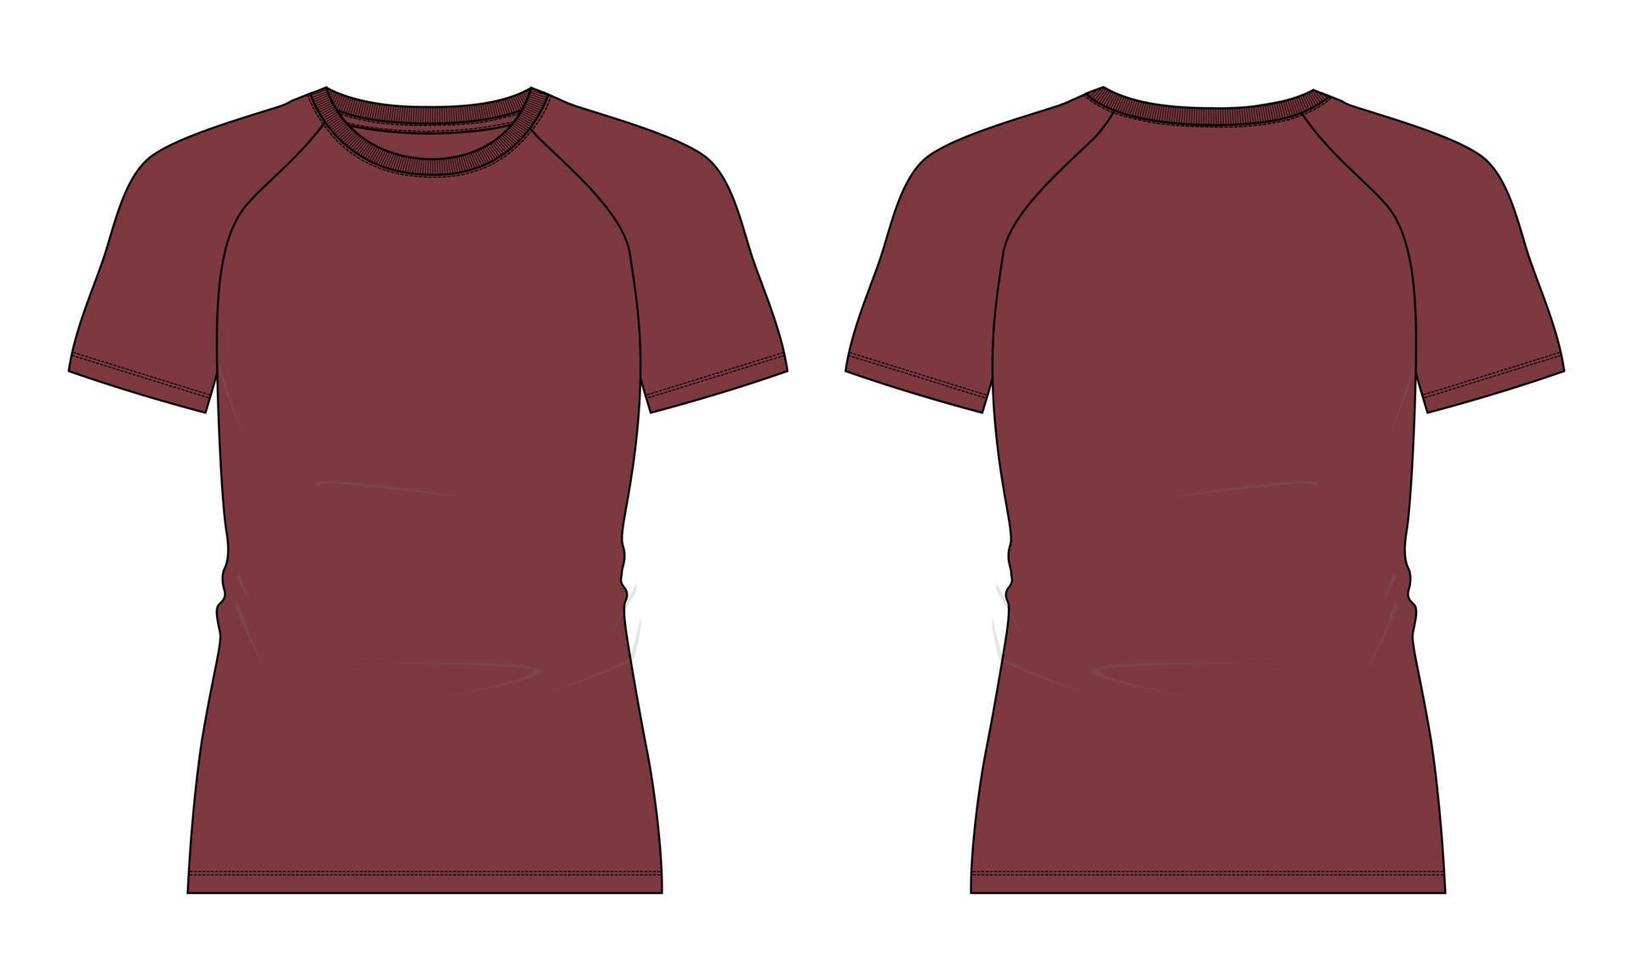 slim fit manica corta raglan t shirt tecnica moda schizzo piatto illustrazione vettoriale colore rosso modello viste anteriore e posteriore isolate su sfondo bianco.